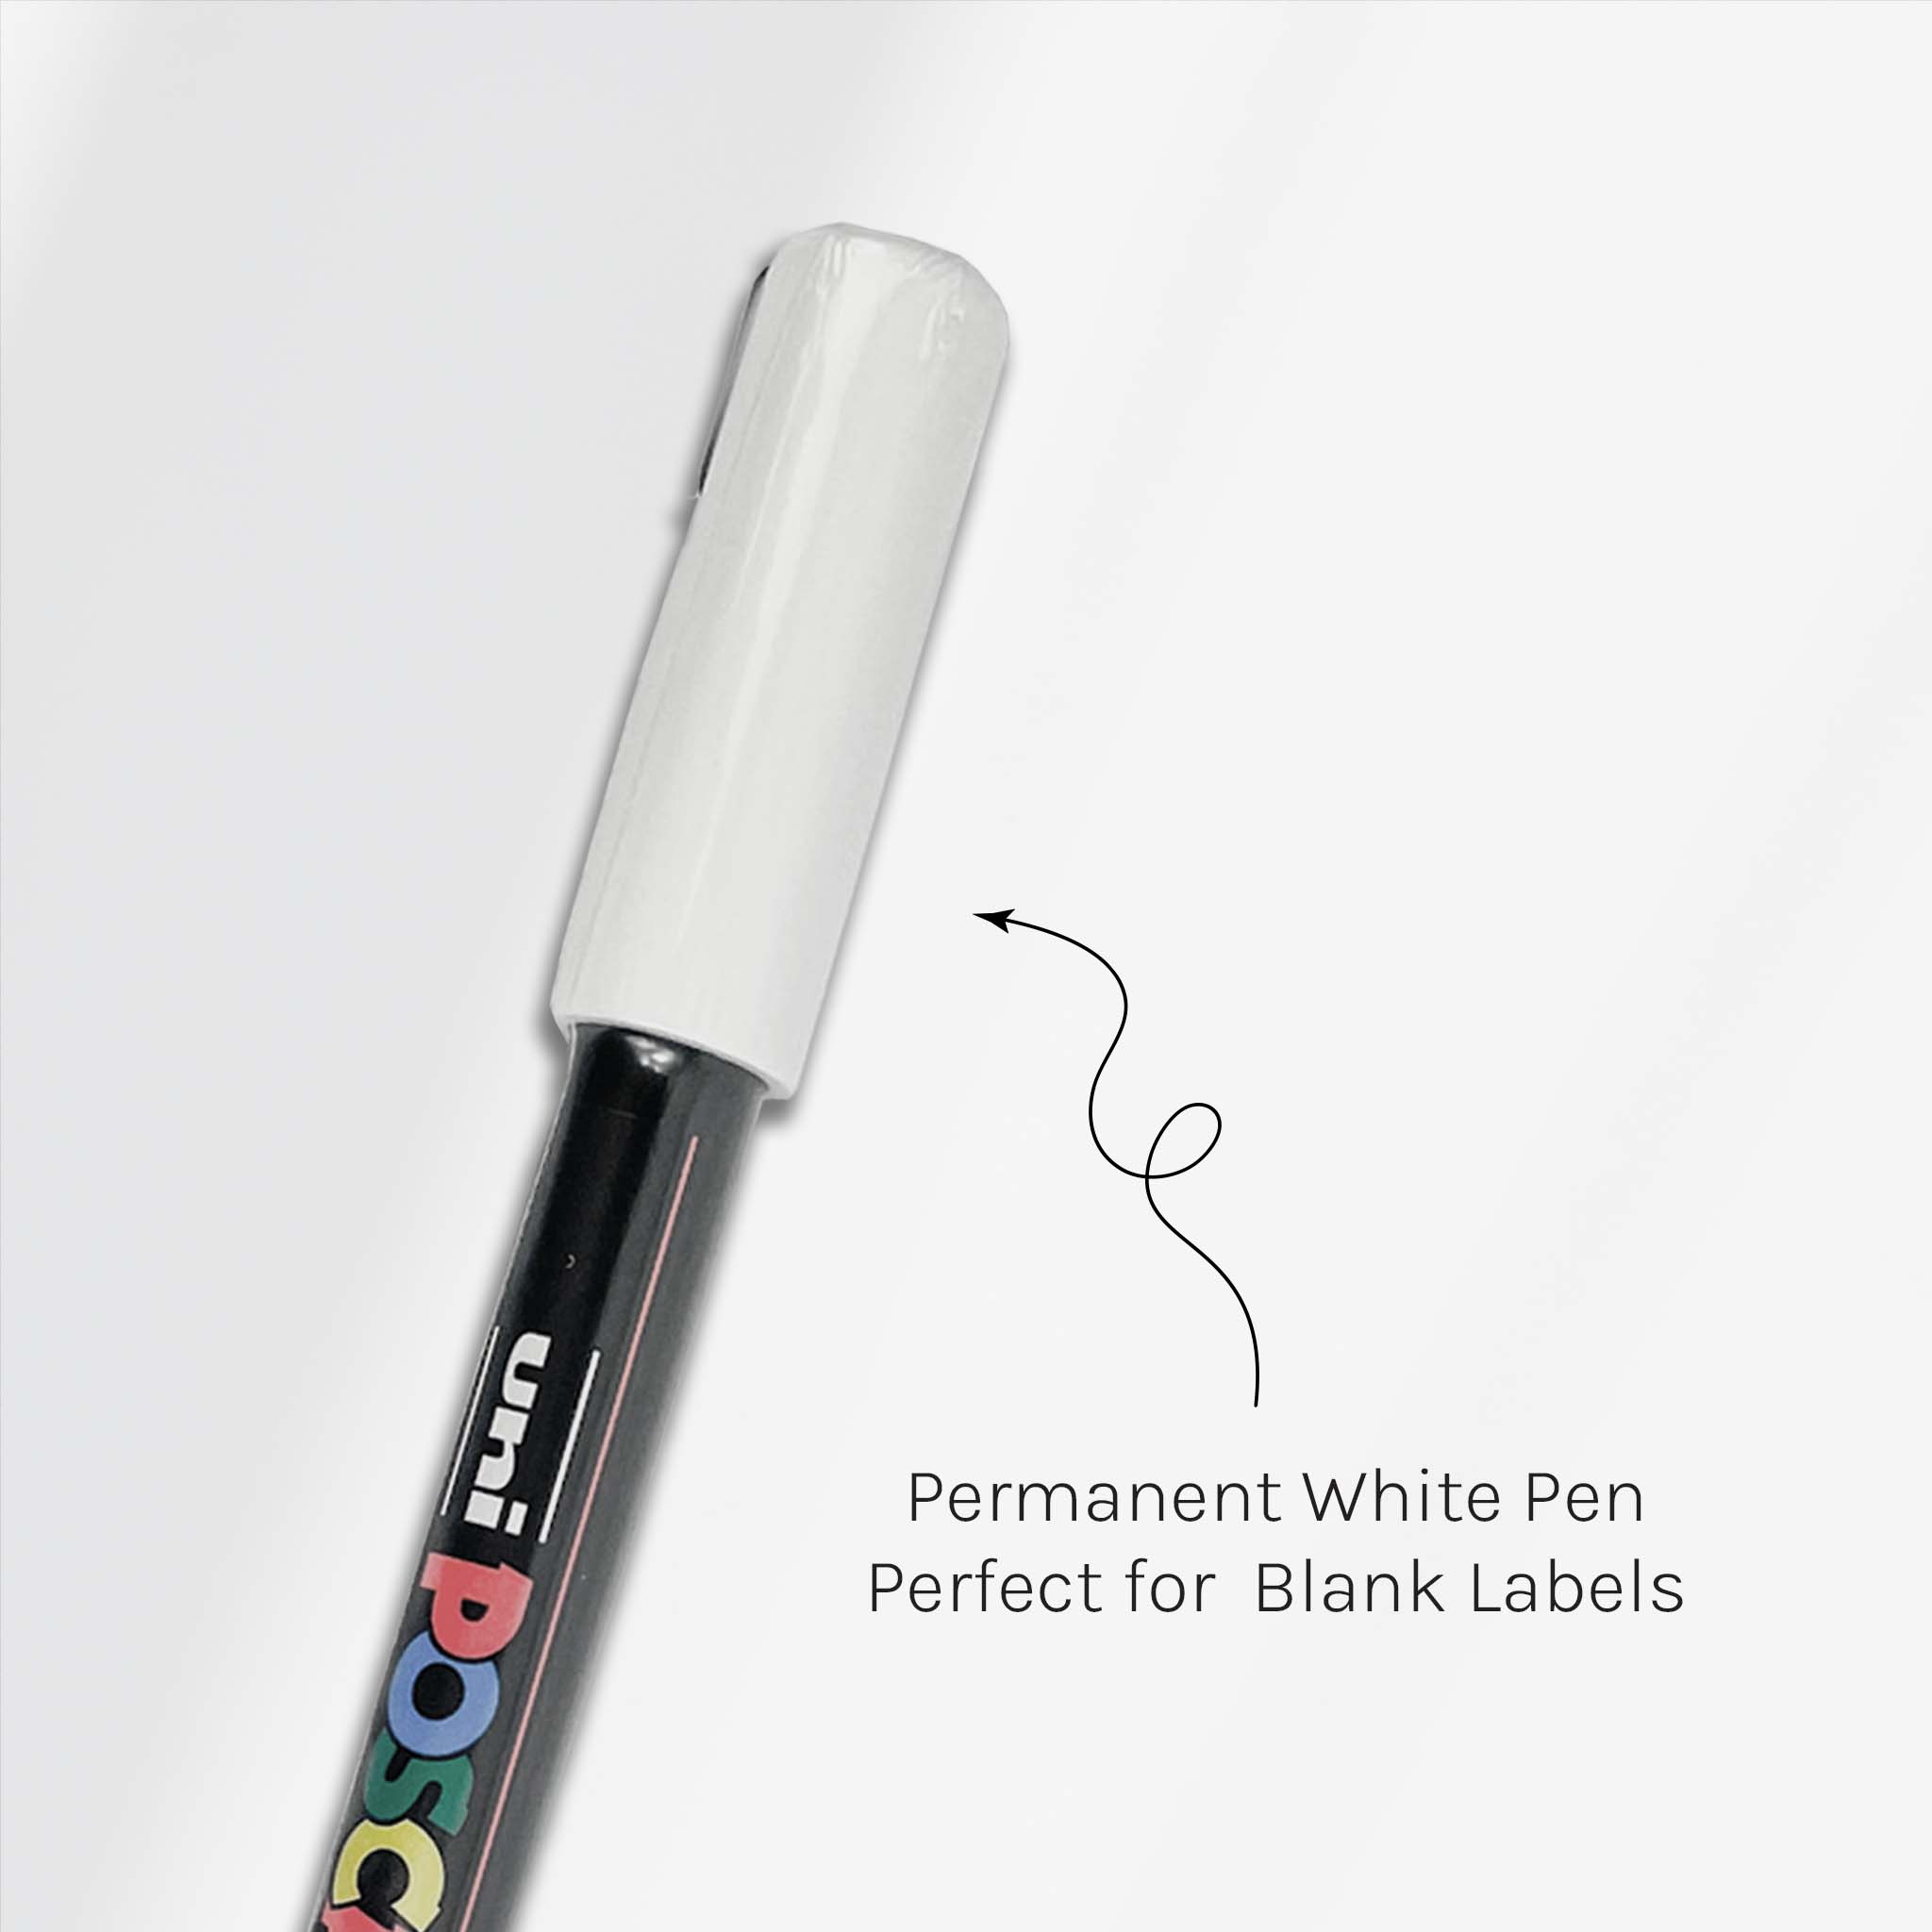 White Permanent Marker - The Pretty Store